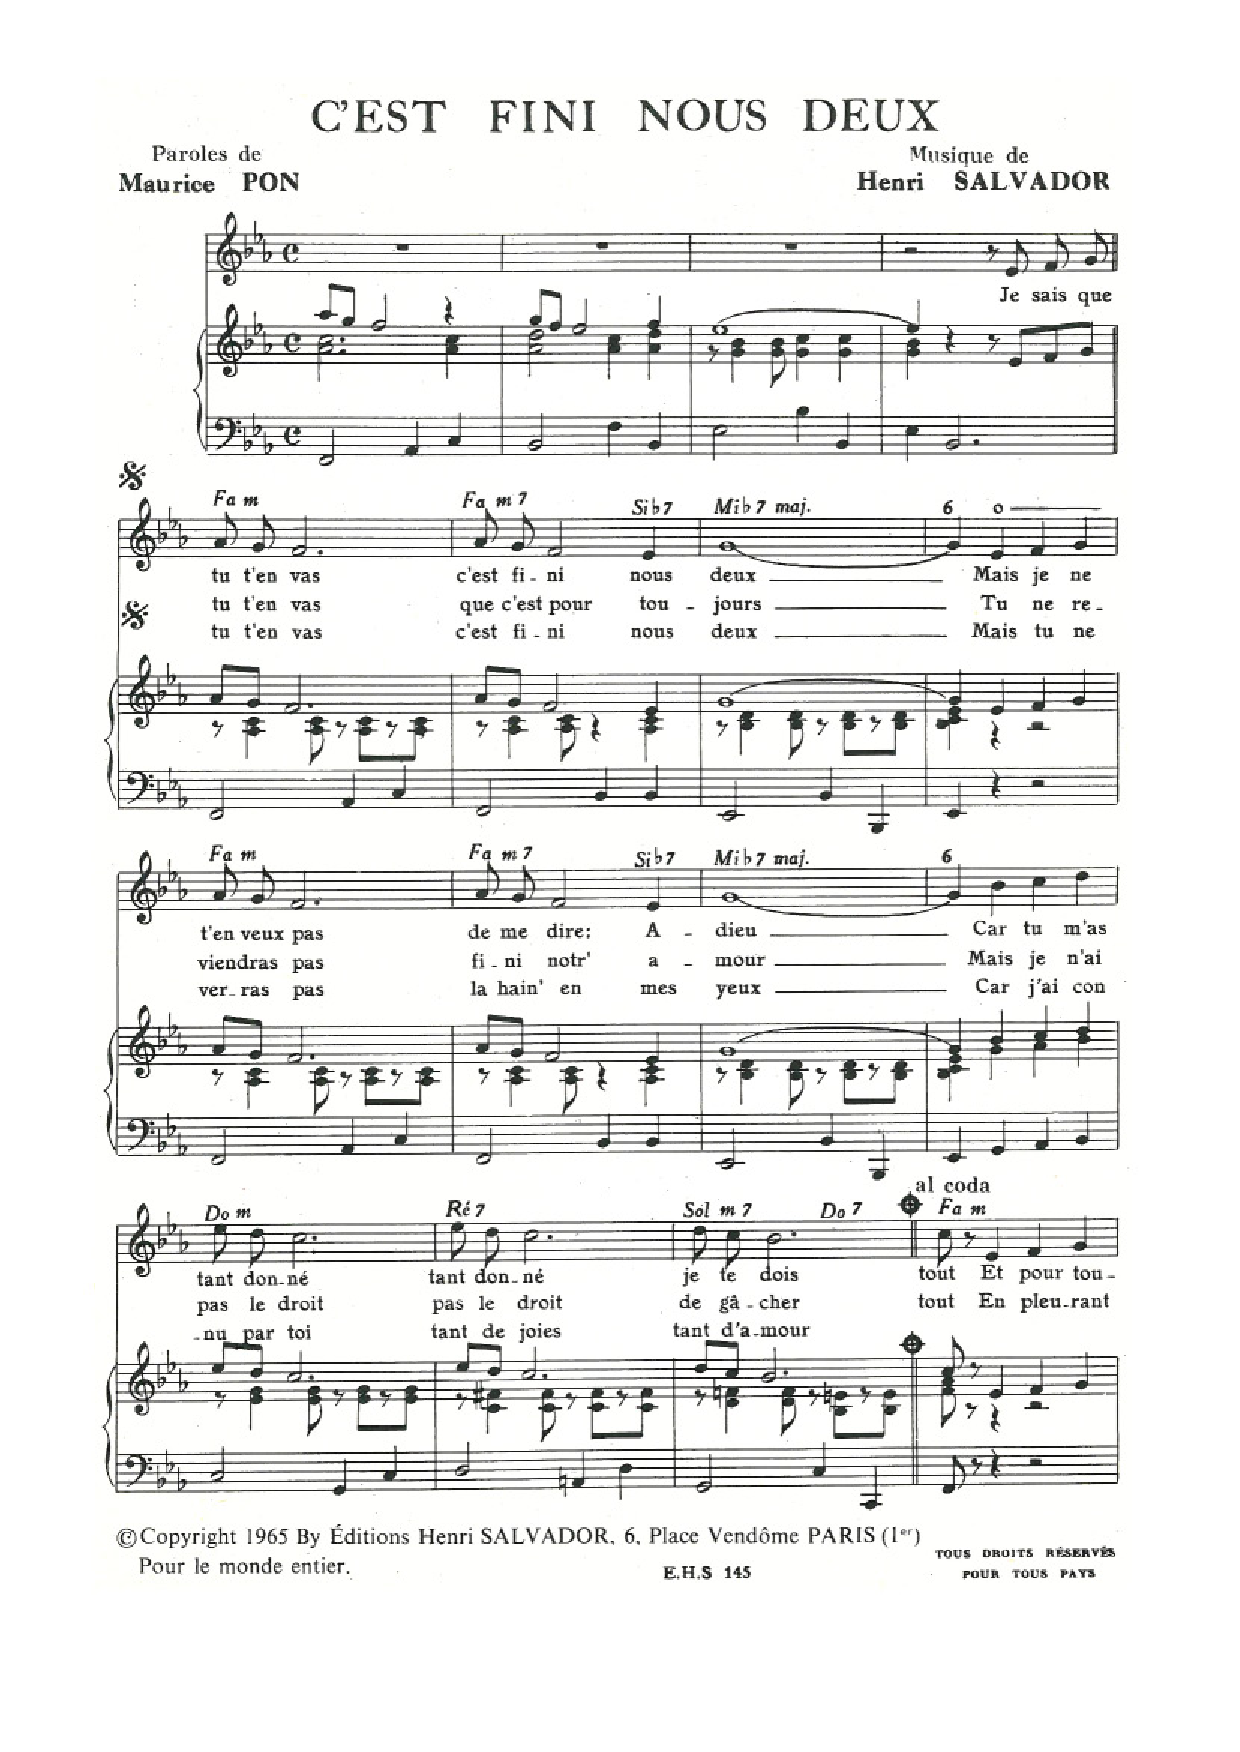 Henri Salvador C'est Fini (Pour) Nous Deux sheet music notes and chords arranged for Piano & Vocal